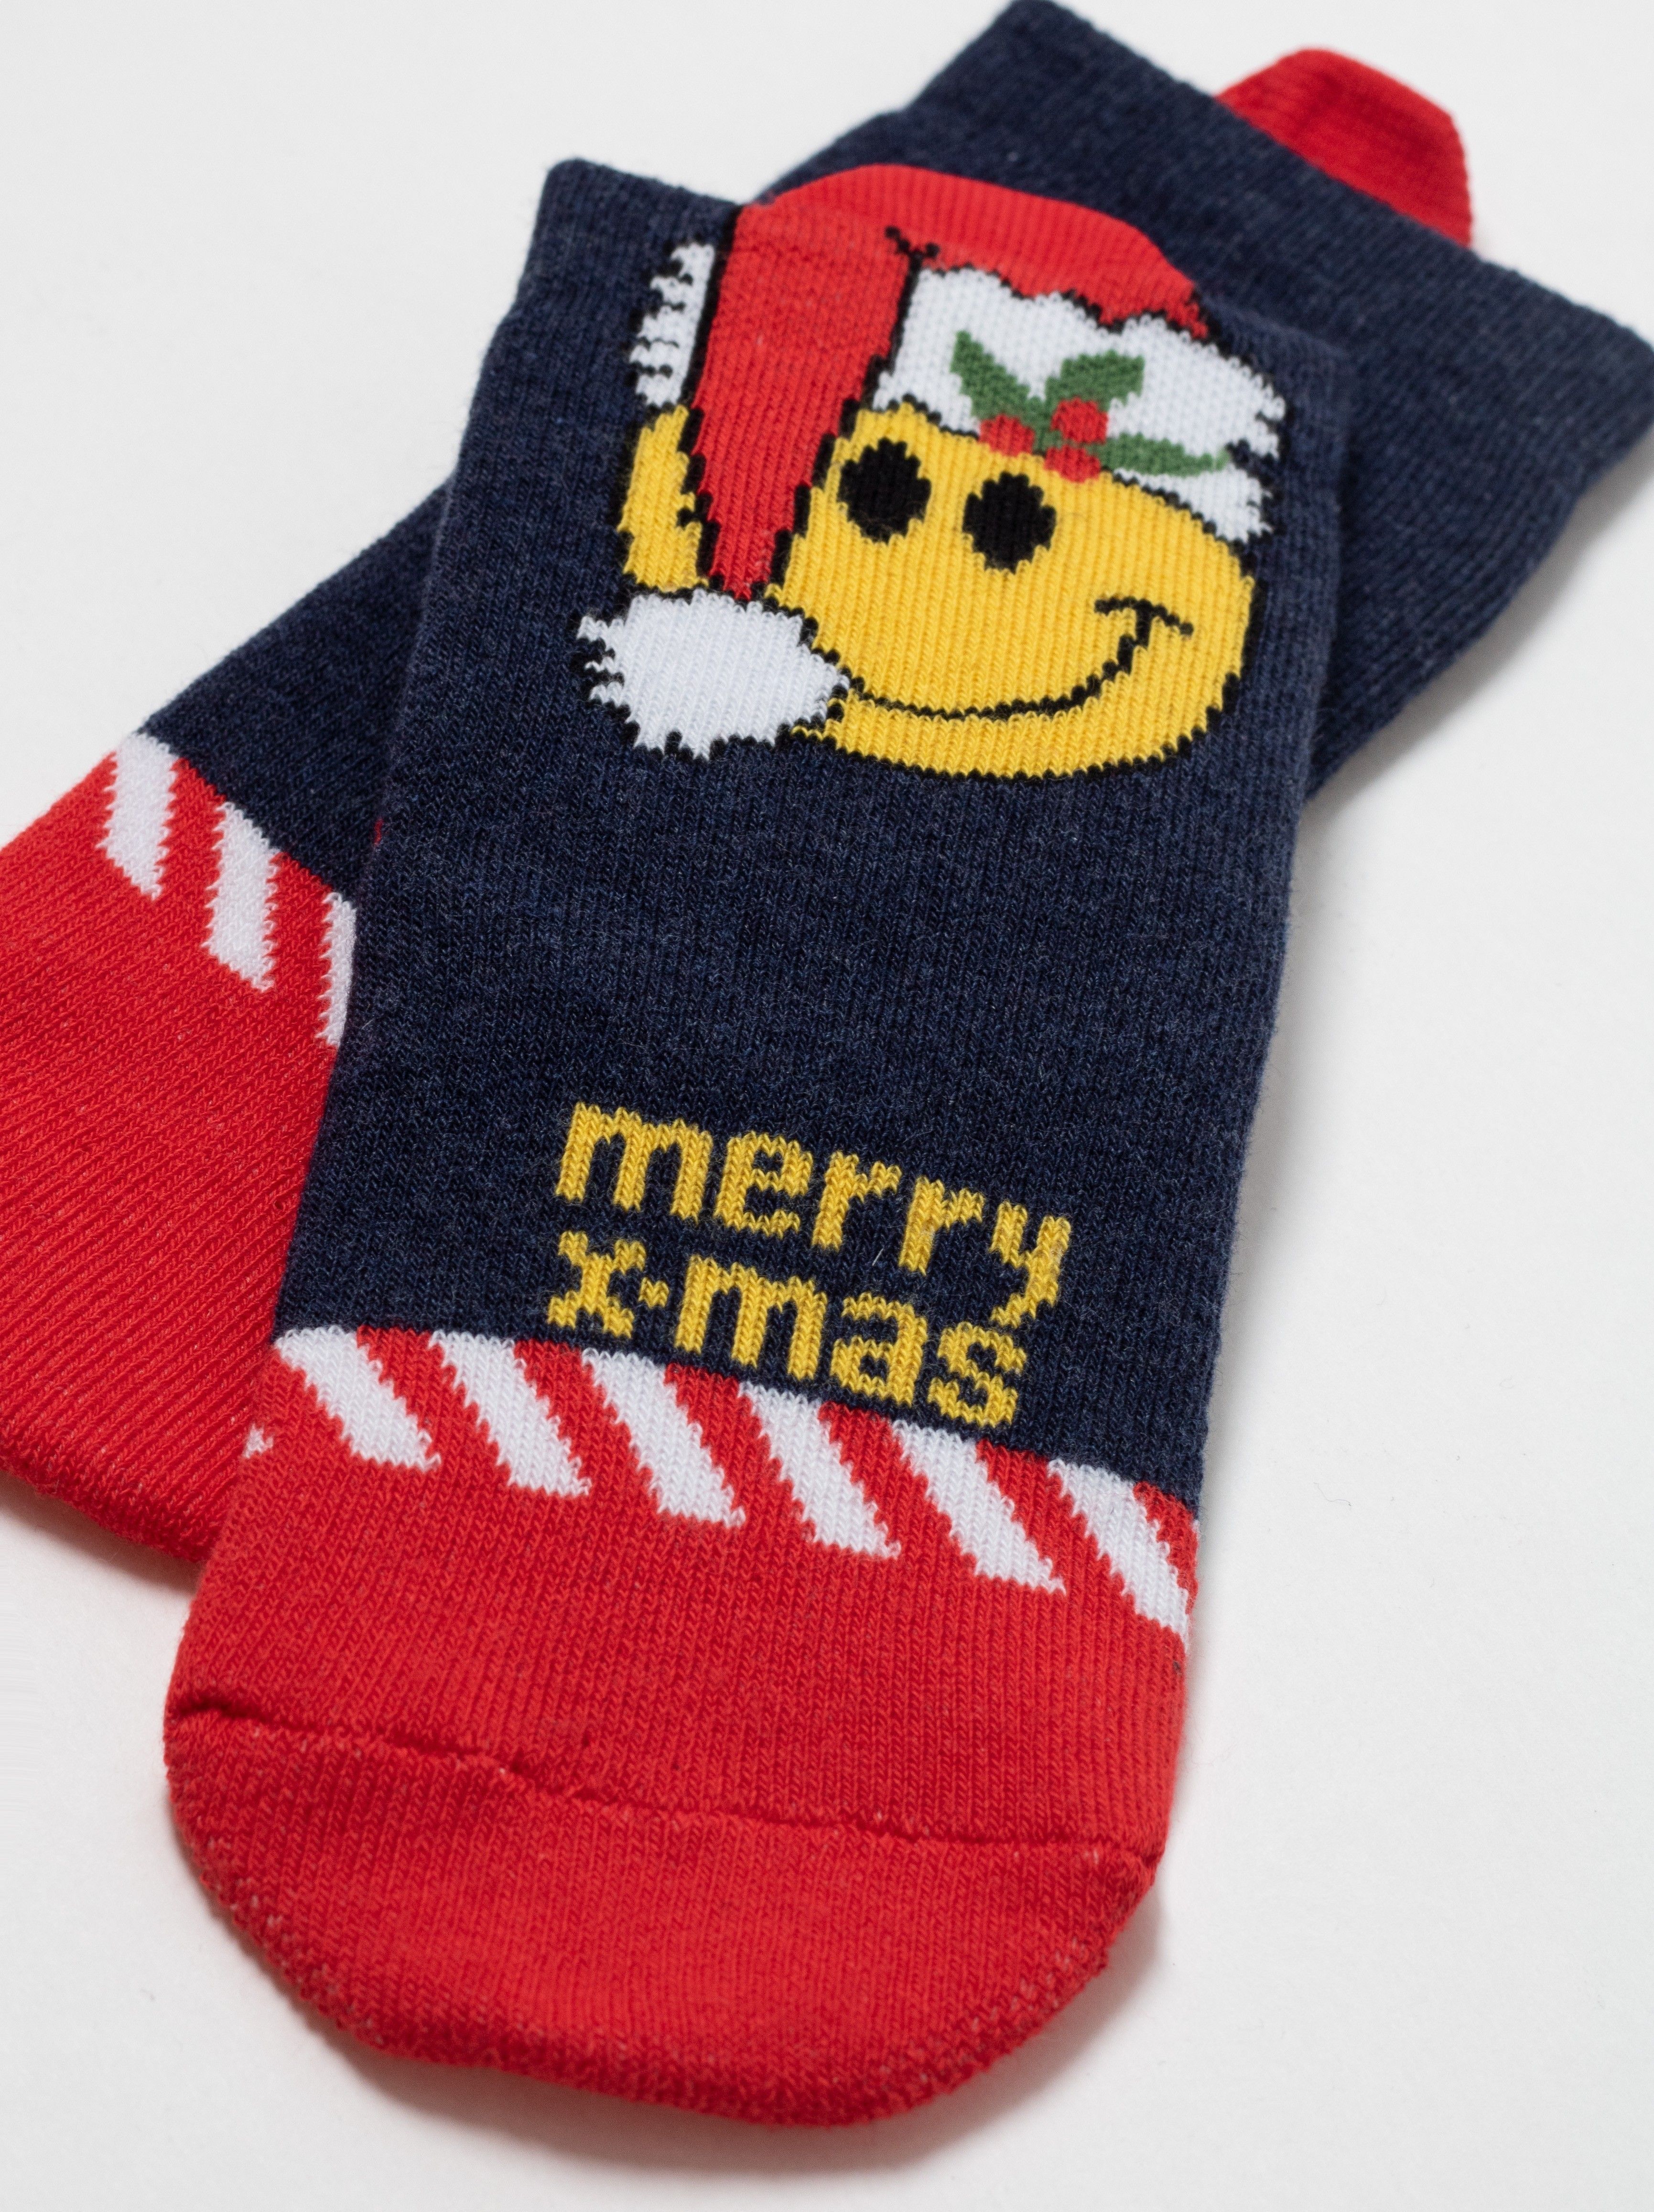 Новогодние носки «Xmas smile» Conte ⭐️, цвет темно-синий, размер 11-12 - фото 1